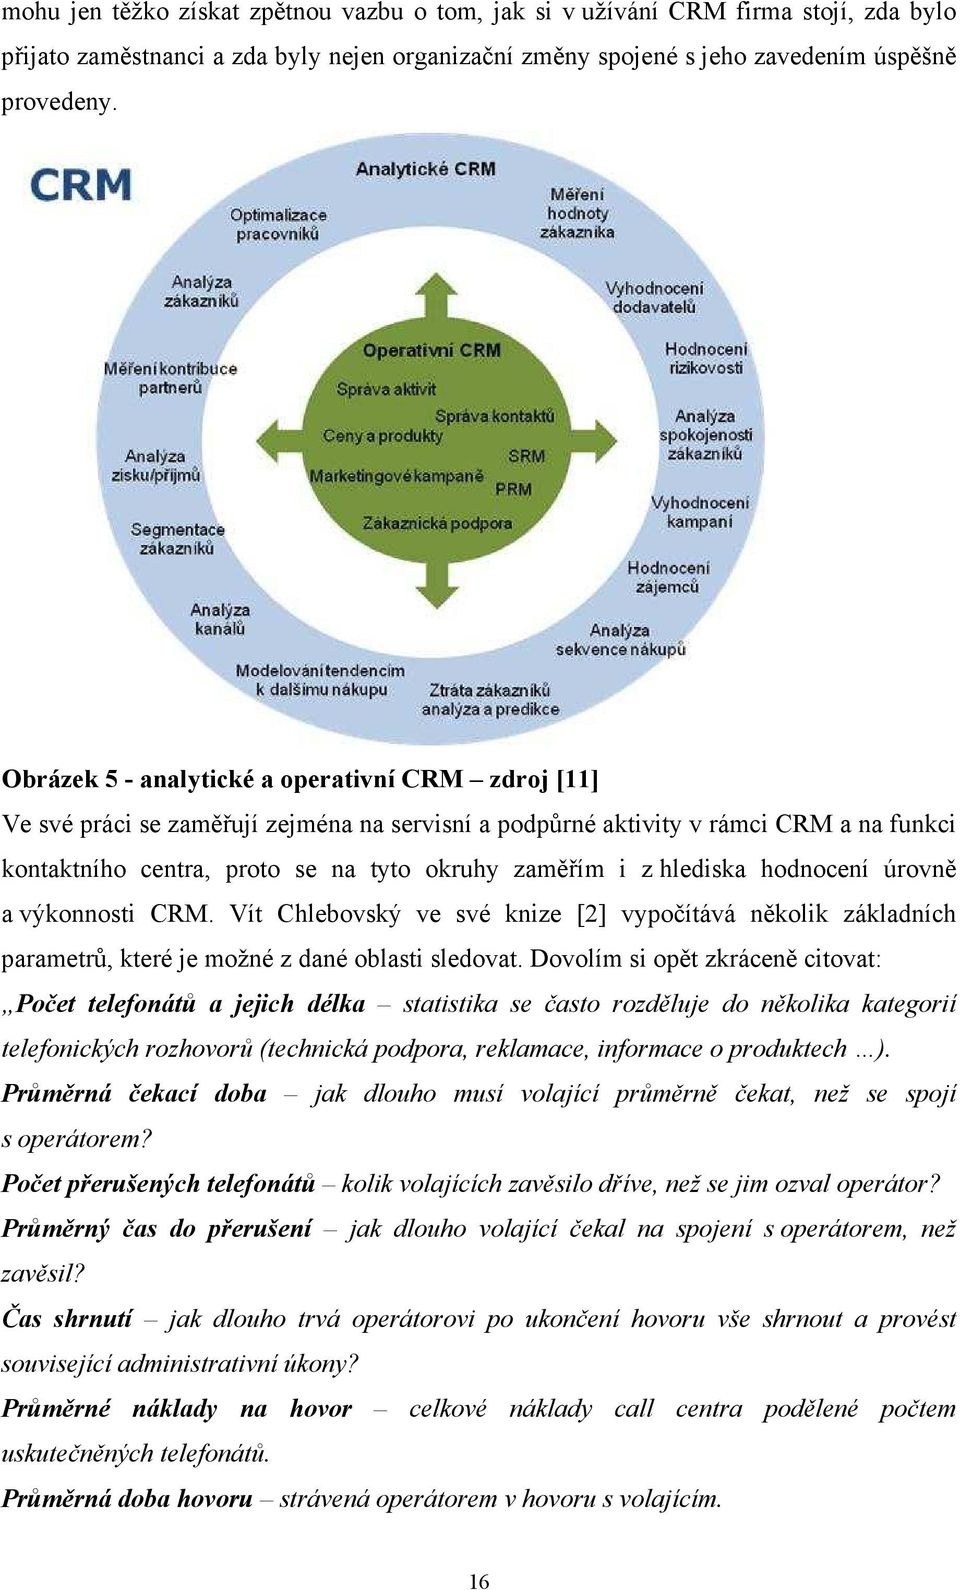 hlediska hodnocení úrovně a výkonnosti CRM. Vít Chlebovský ve své knize [2] vypočítává několik základních parametrů, které je možné z dané oblasti sledovat.